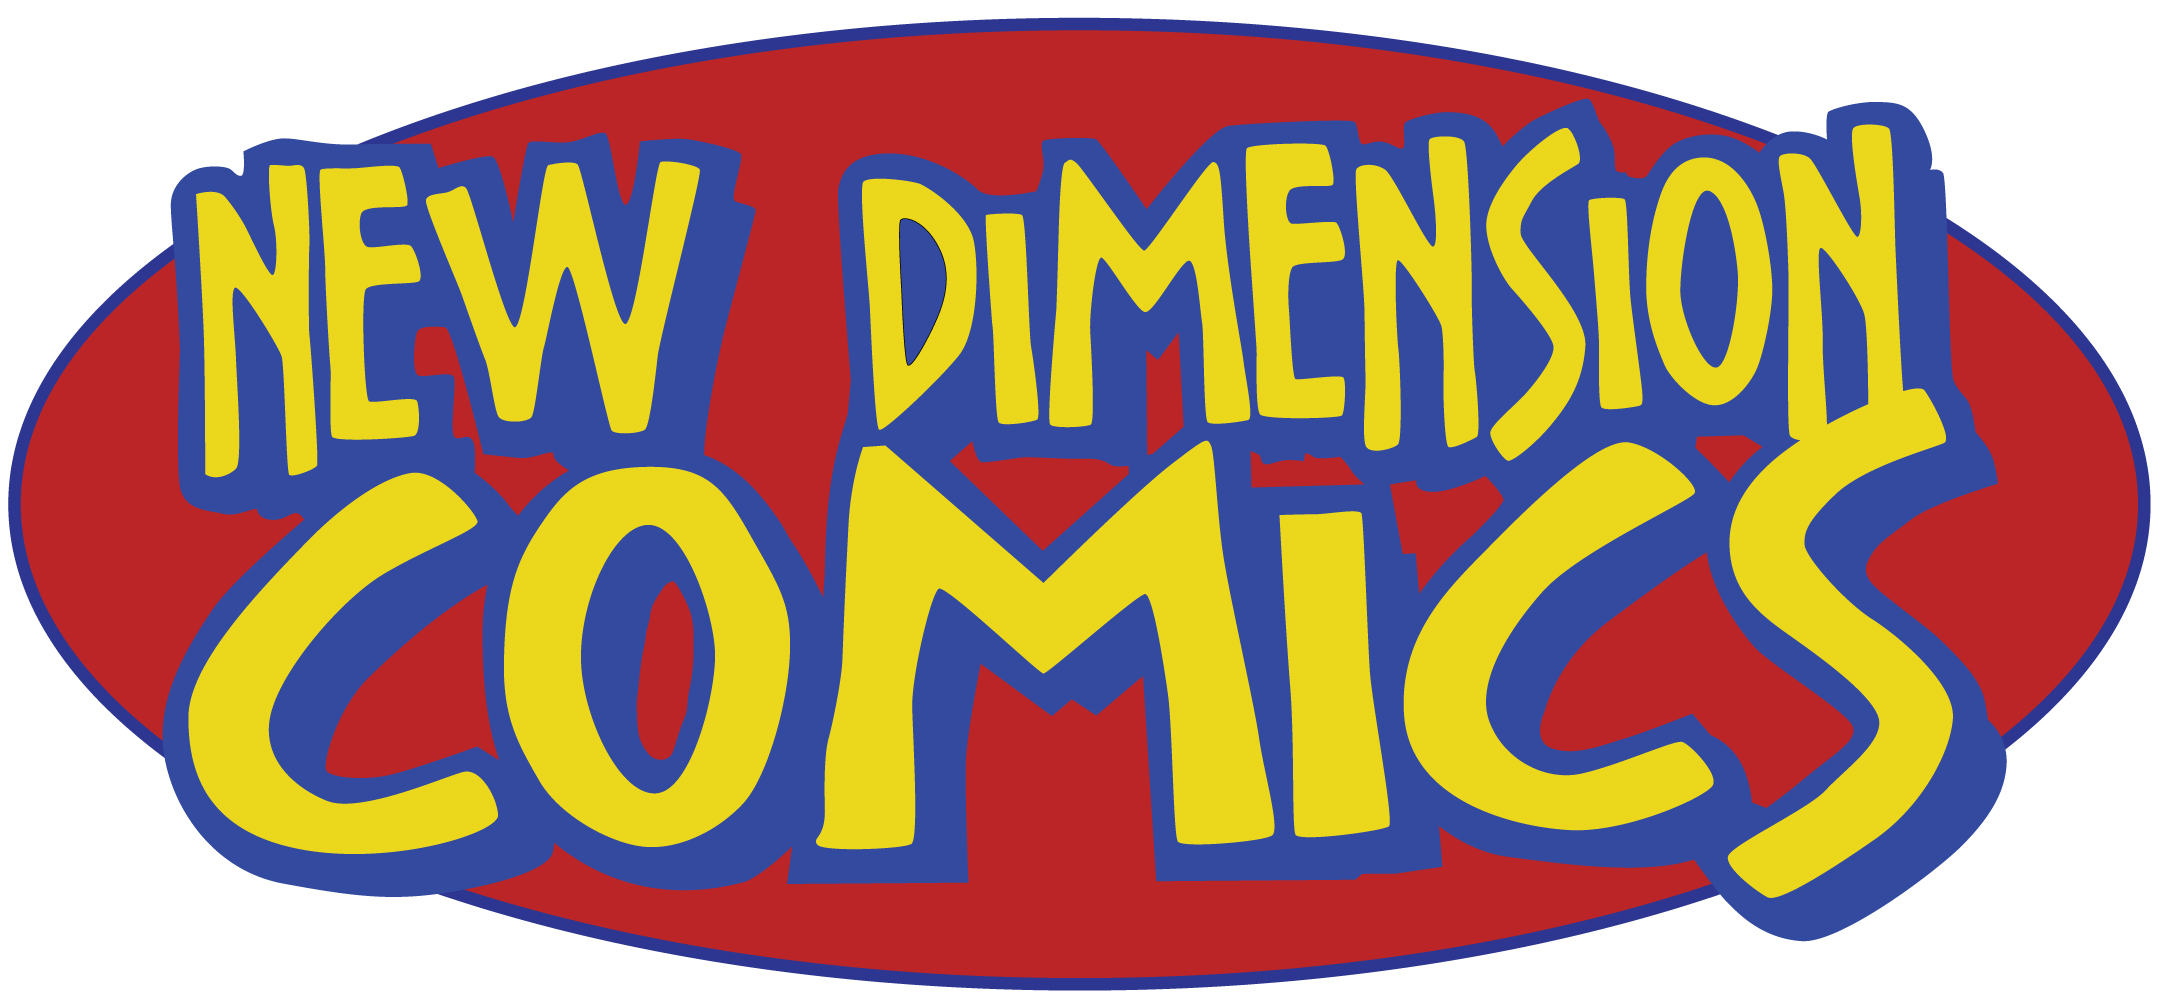 NEW DIMENSION COMICS OHIO VALLEY